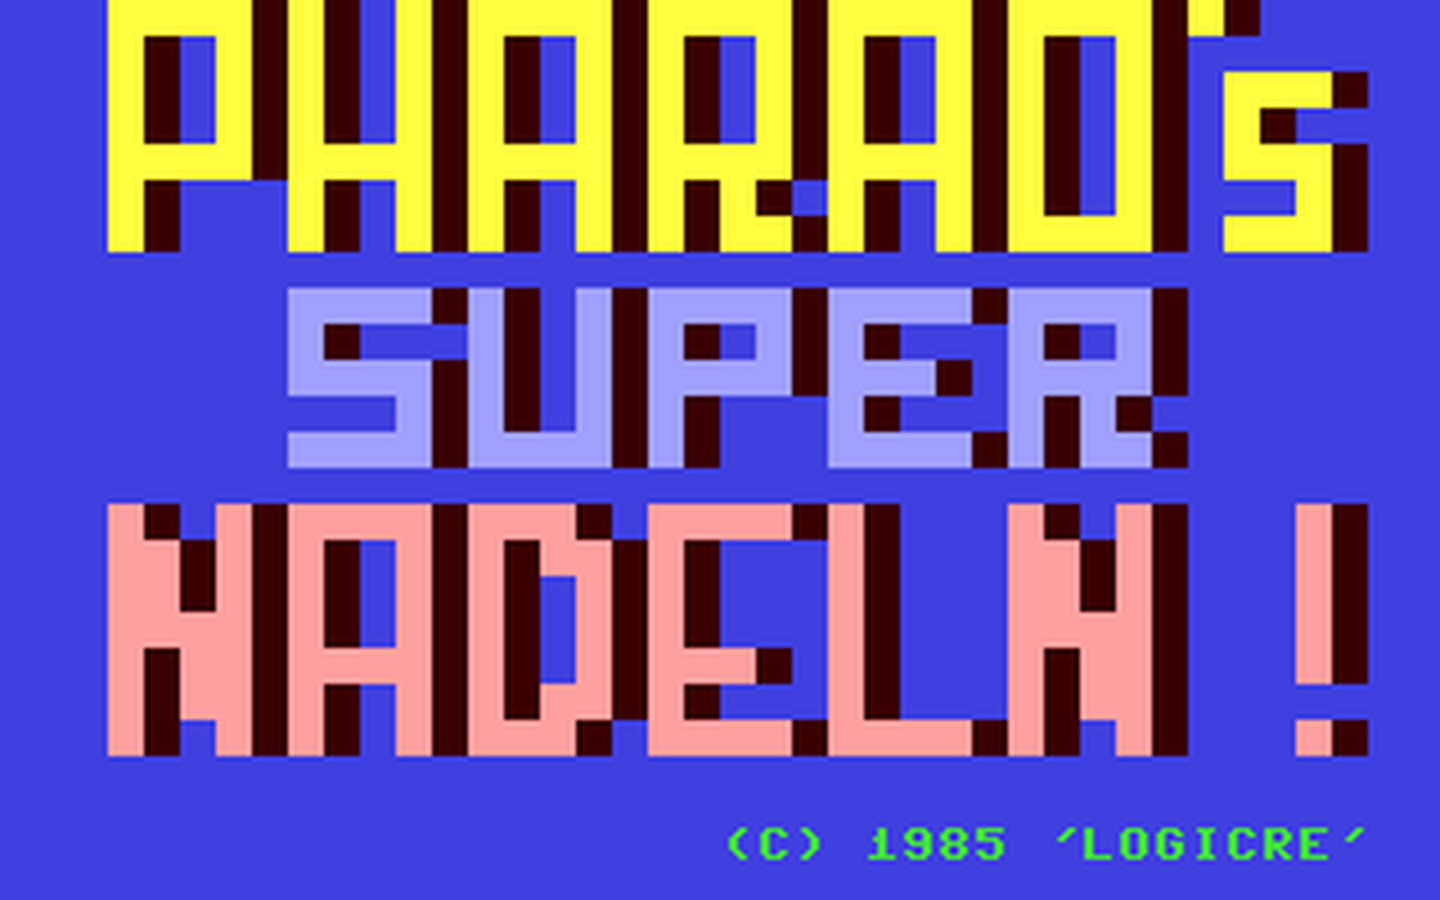 C64 GameBase Pharao's_Super_Nadeln! 1985